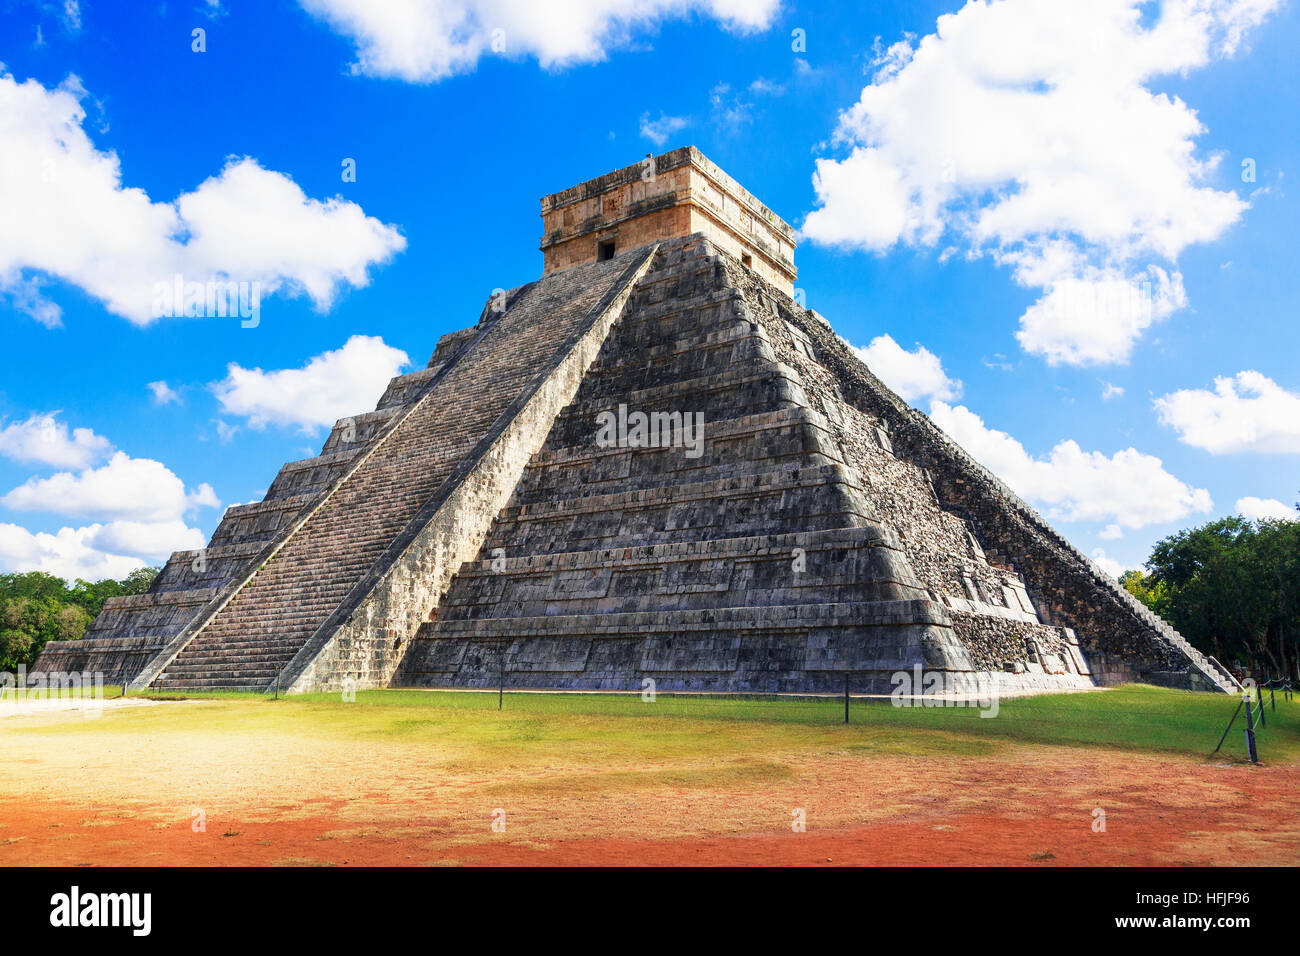 La structure centrale de Castillo, dans l'ancien temple maya de Chichen Itza, Yucatan, Mexique Banque D'Images